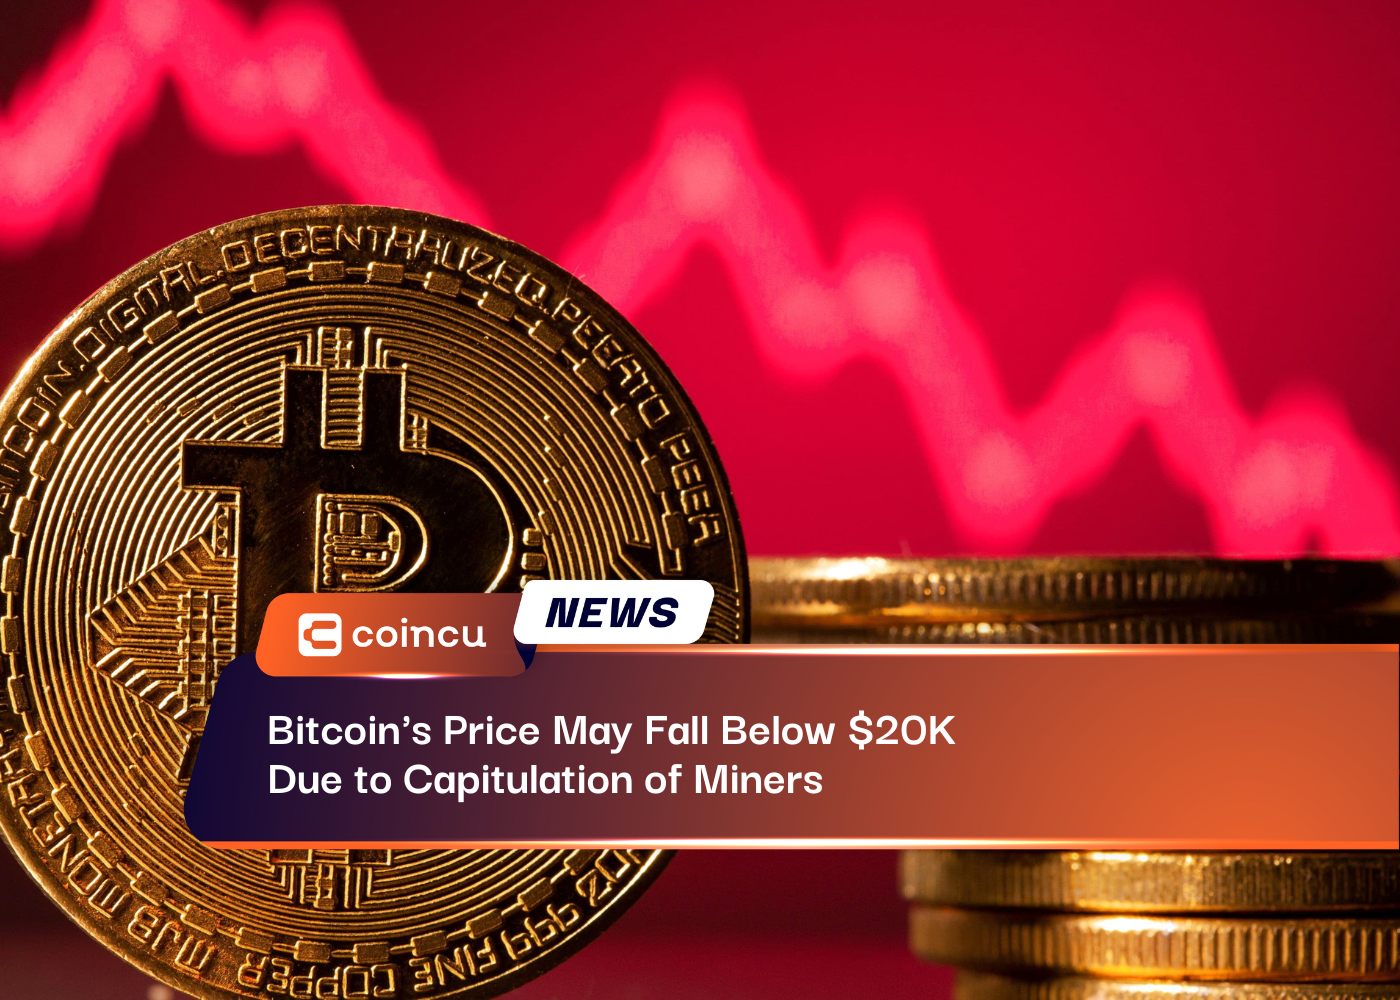 Der Bitcoin-Preis könnte aufgrund der Kapitulation der Bergleute unter 20 US-Dollar fallen